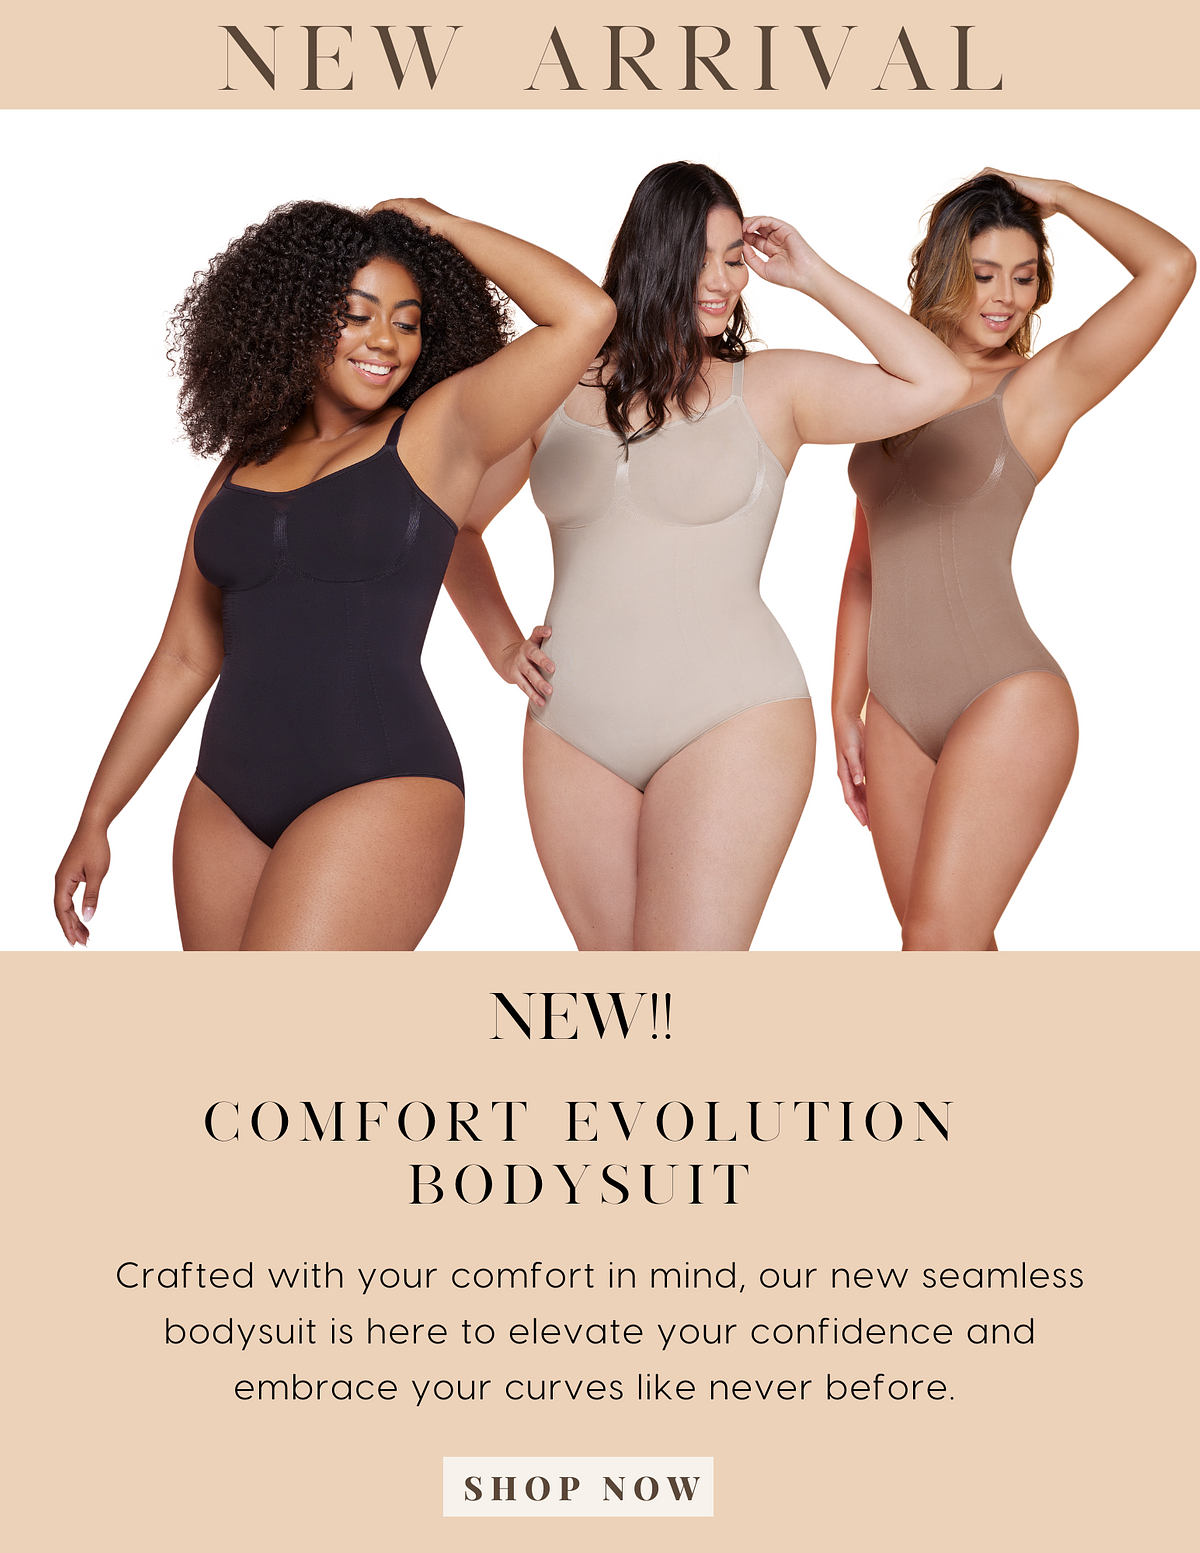 🚨NEW PRODUCT ALERT! Comfort Evolution Bodysuit Is Here